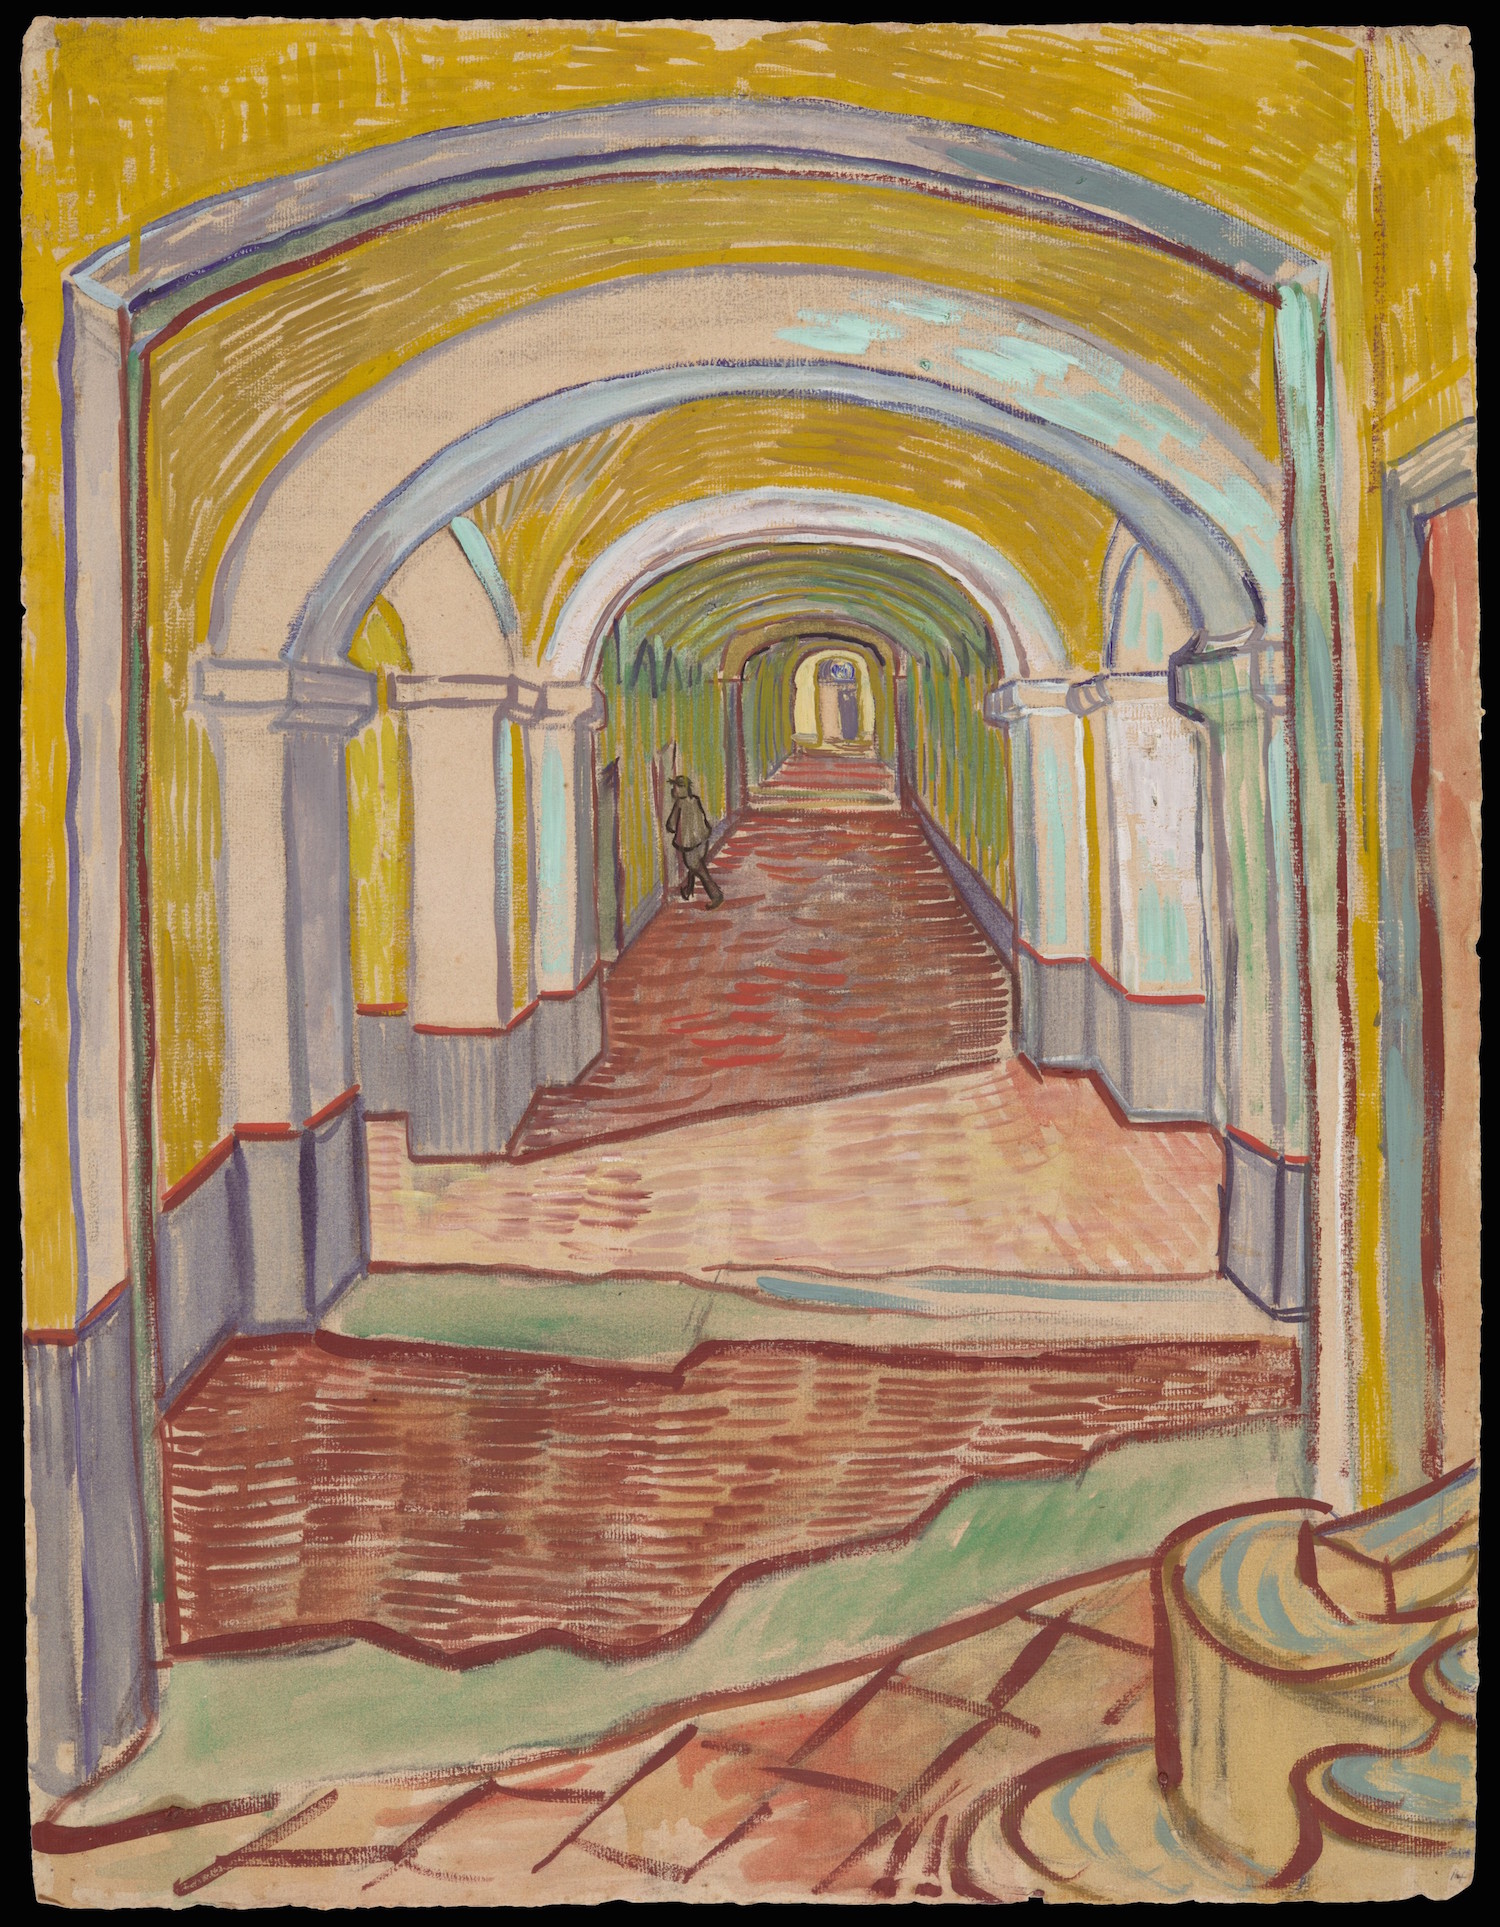 Folyosó az intézetben by Vincent van Gogh - 1889 - 65,1 x 49,1 cm 